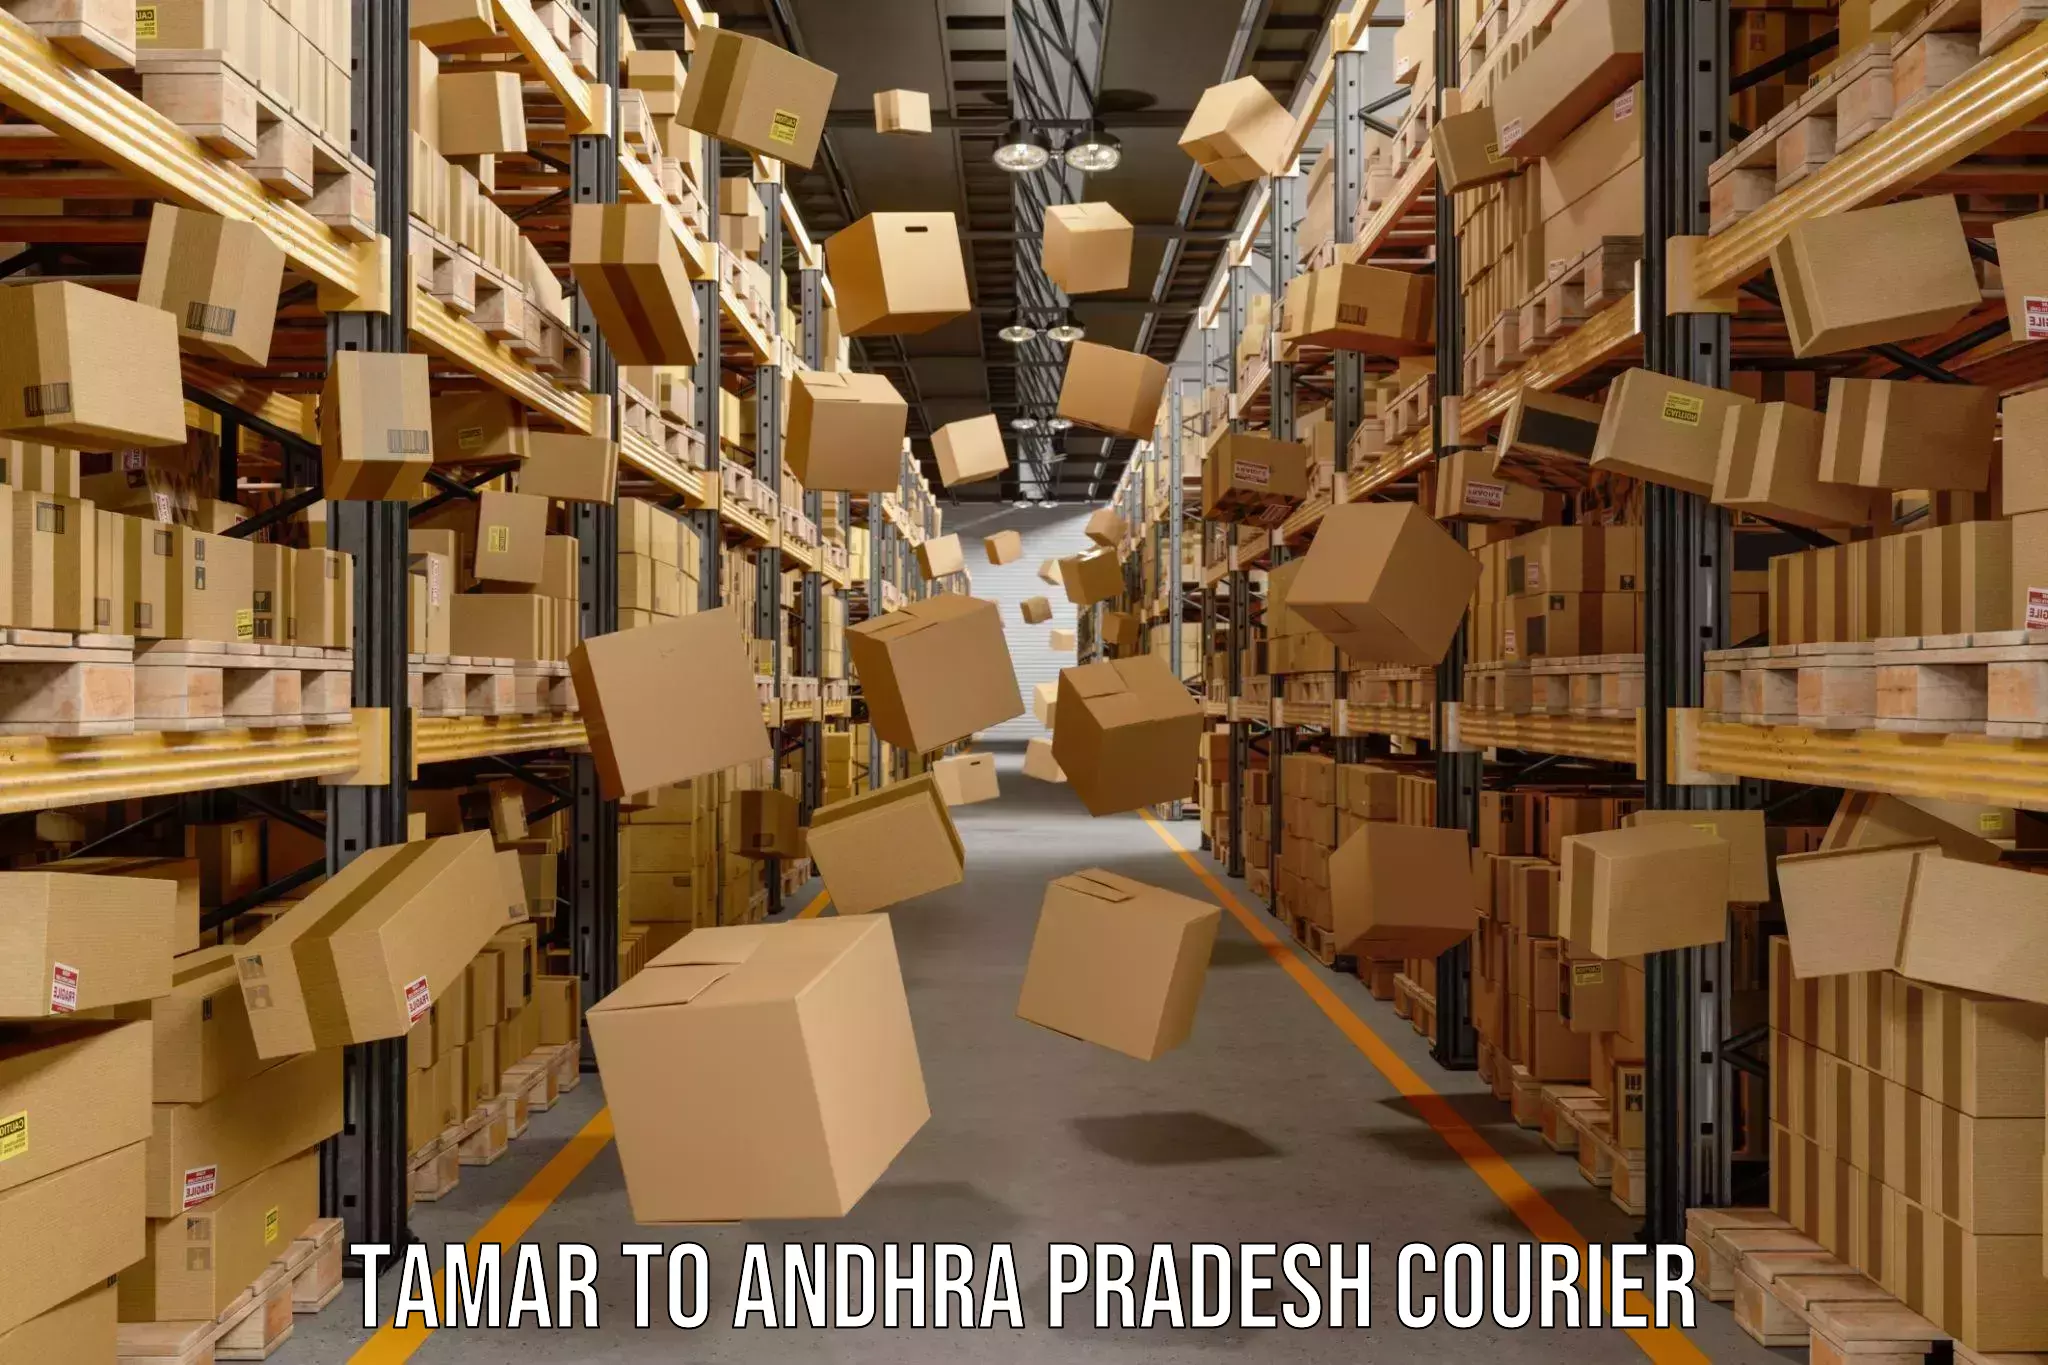 Local delivery service Tamar to Andhra Pradesh